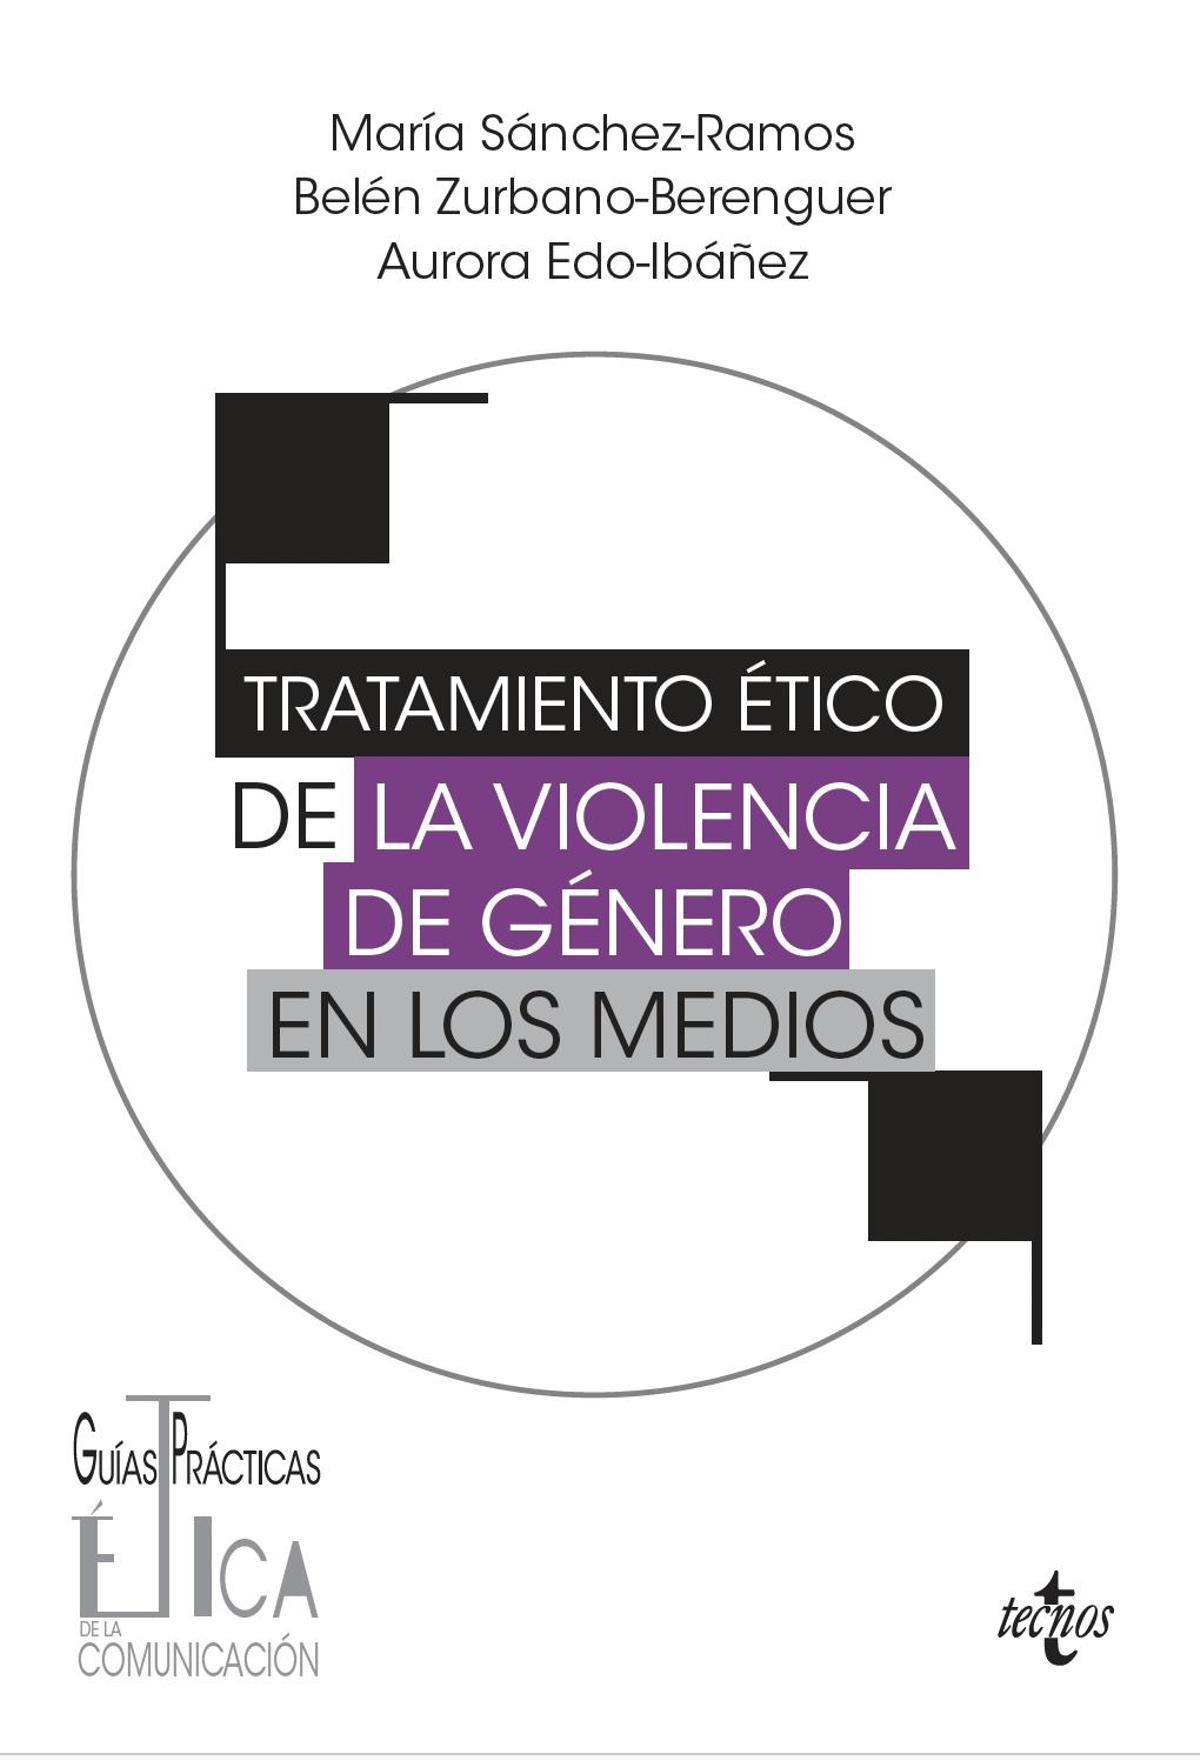 'Tratamiento ético de la violencia de género en los medios' (editorial Tecnos)